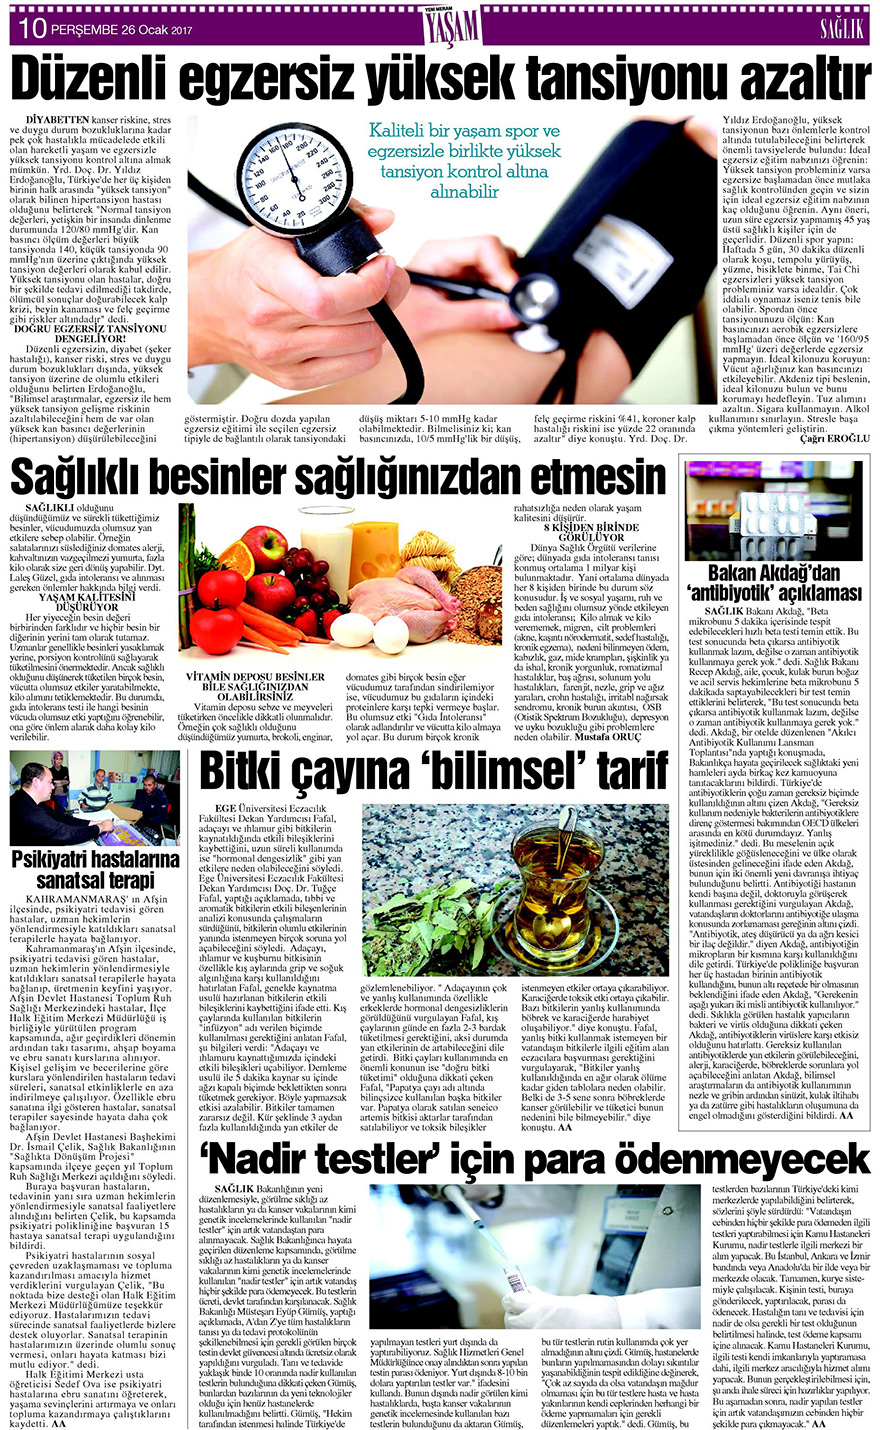 26 Ocak 2017 Yeni Meram Gazetesi